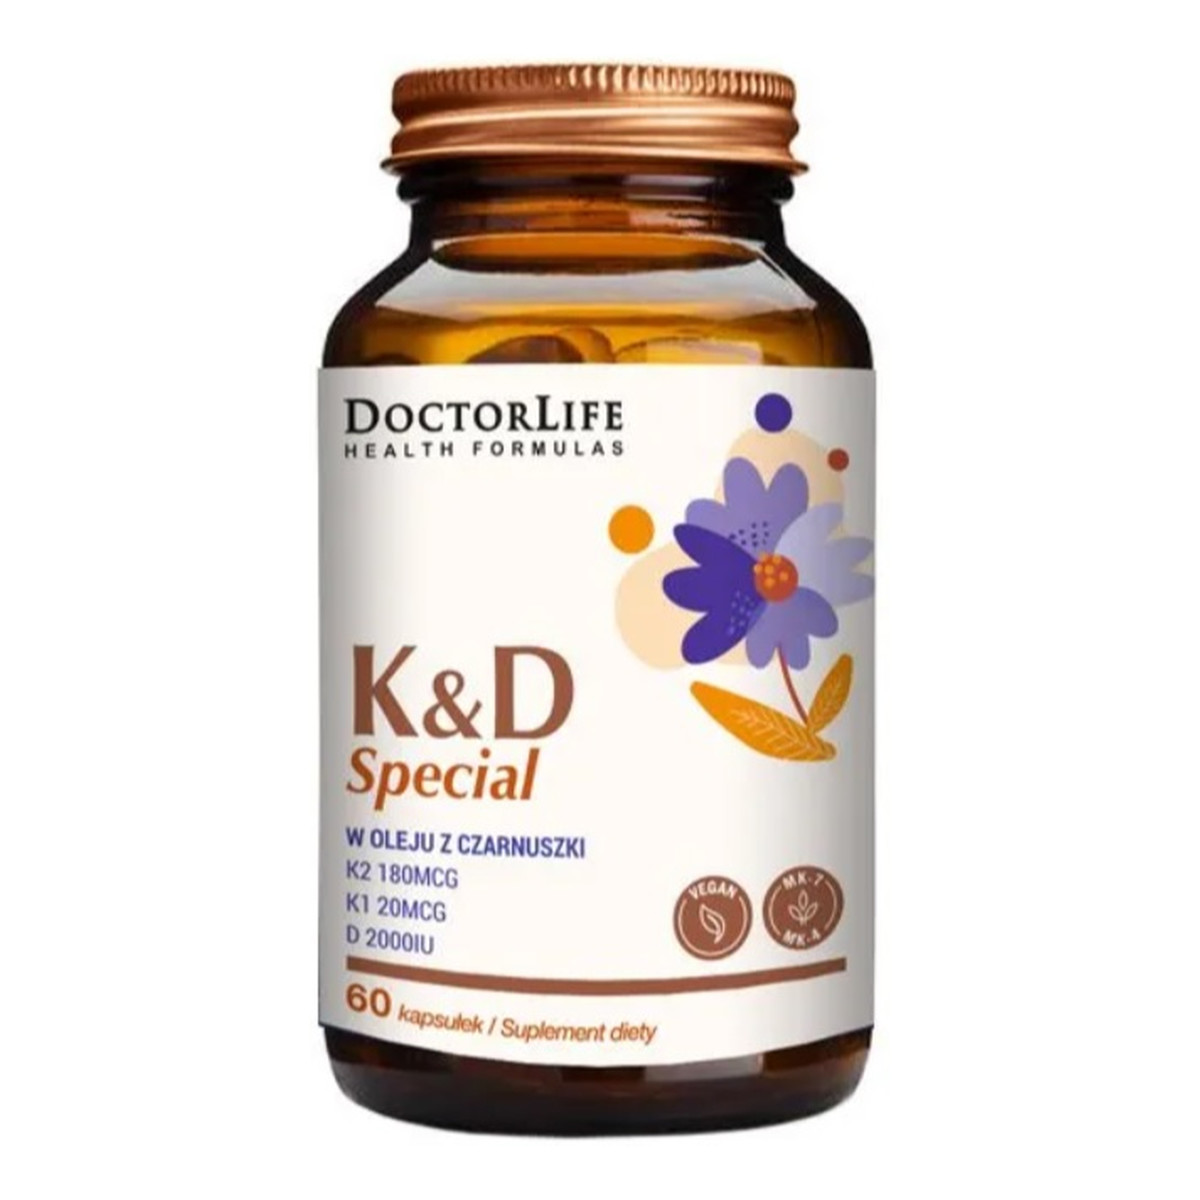 Doctor Life K&d special w oleju z czarnuszki suplement diety 60 kapsułek